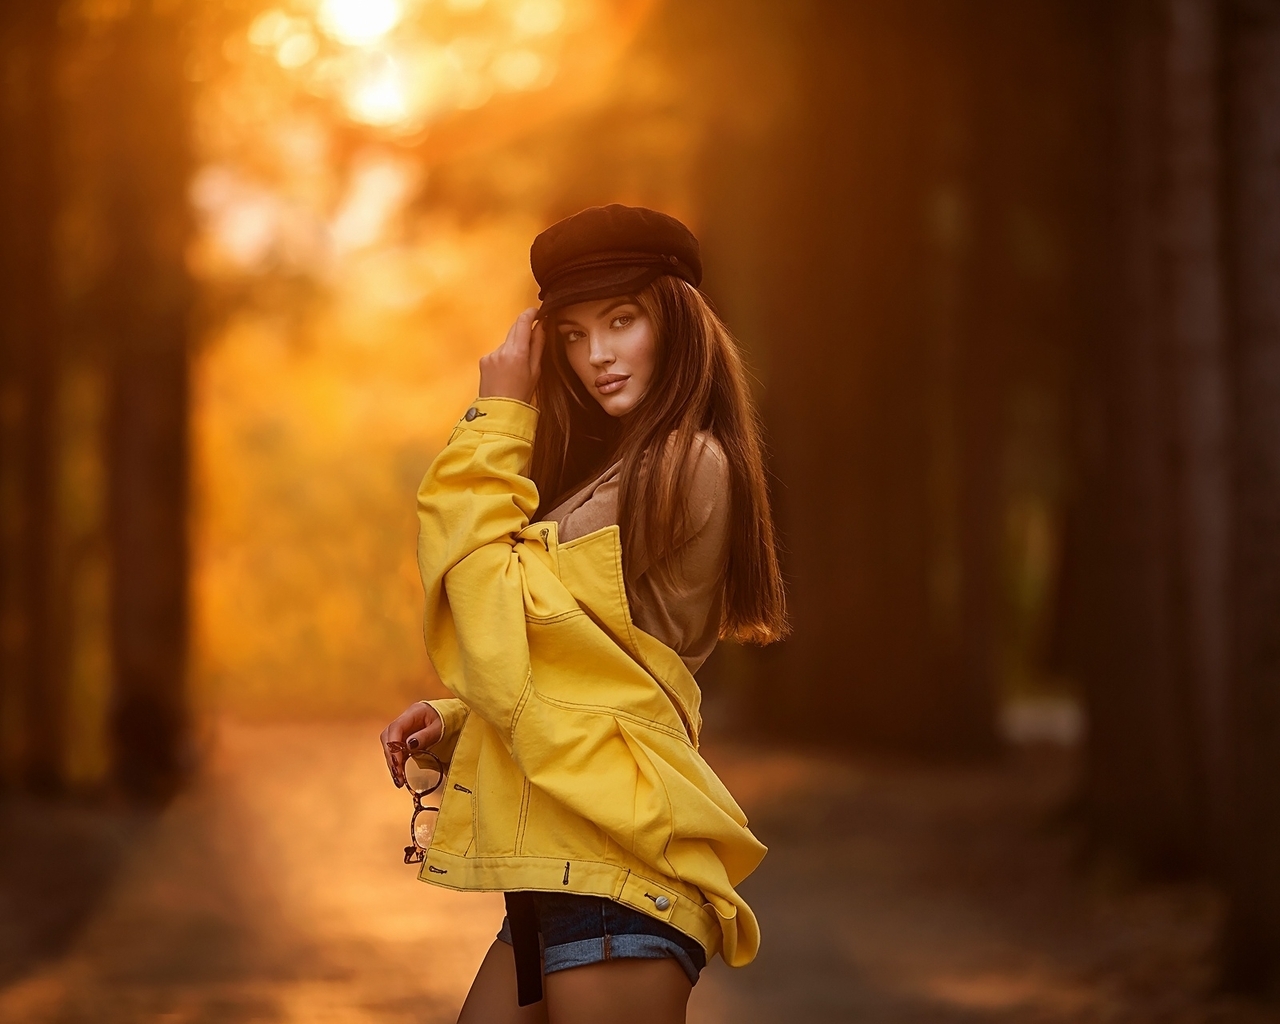 Image: Girl, cap, yellow, jacket